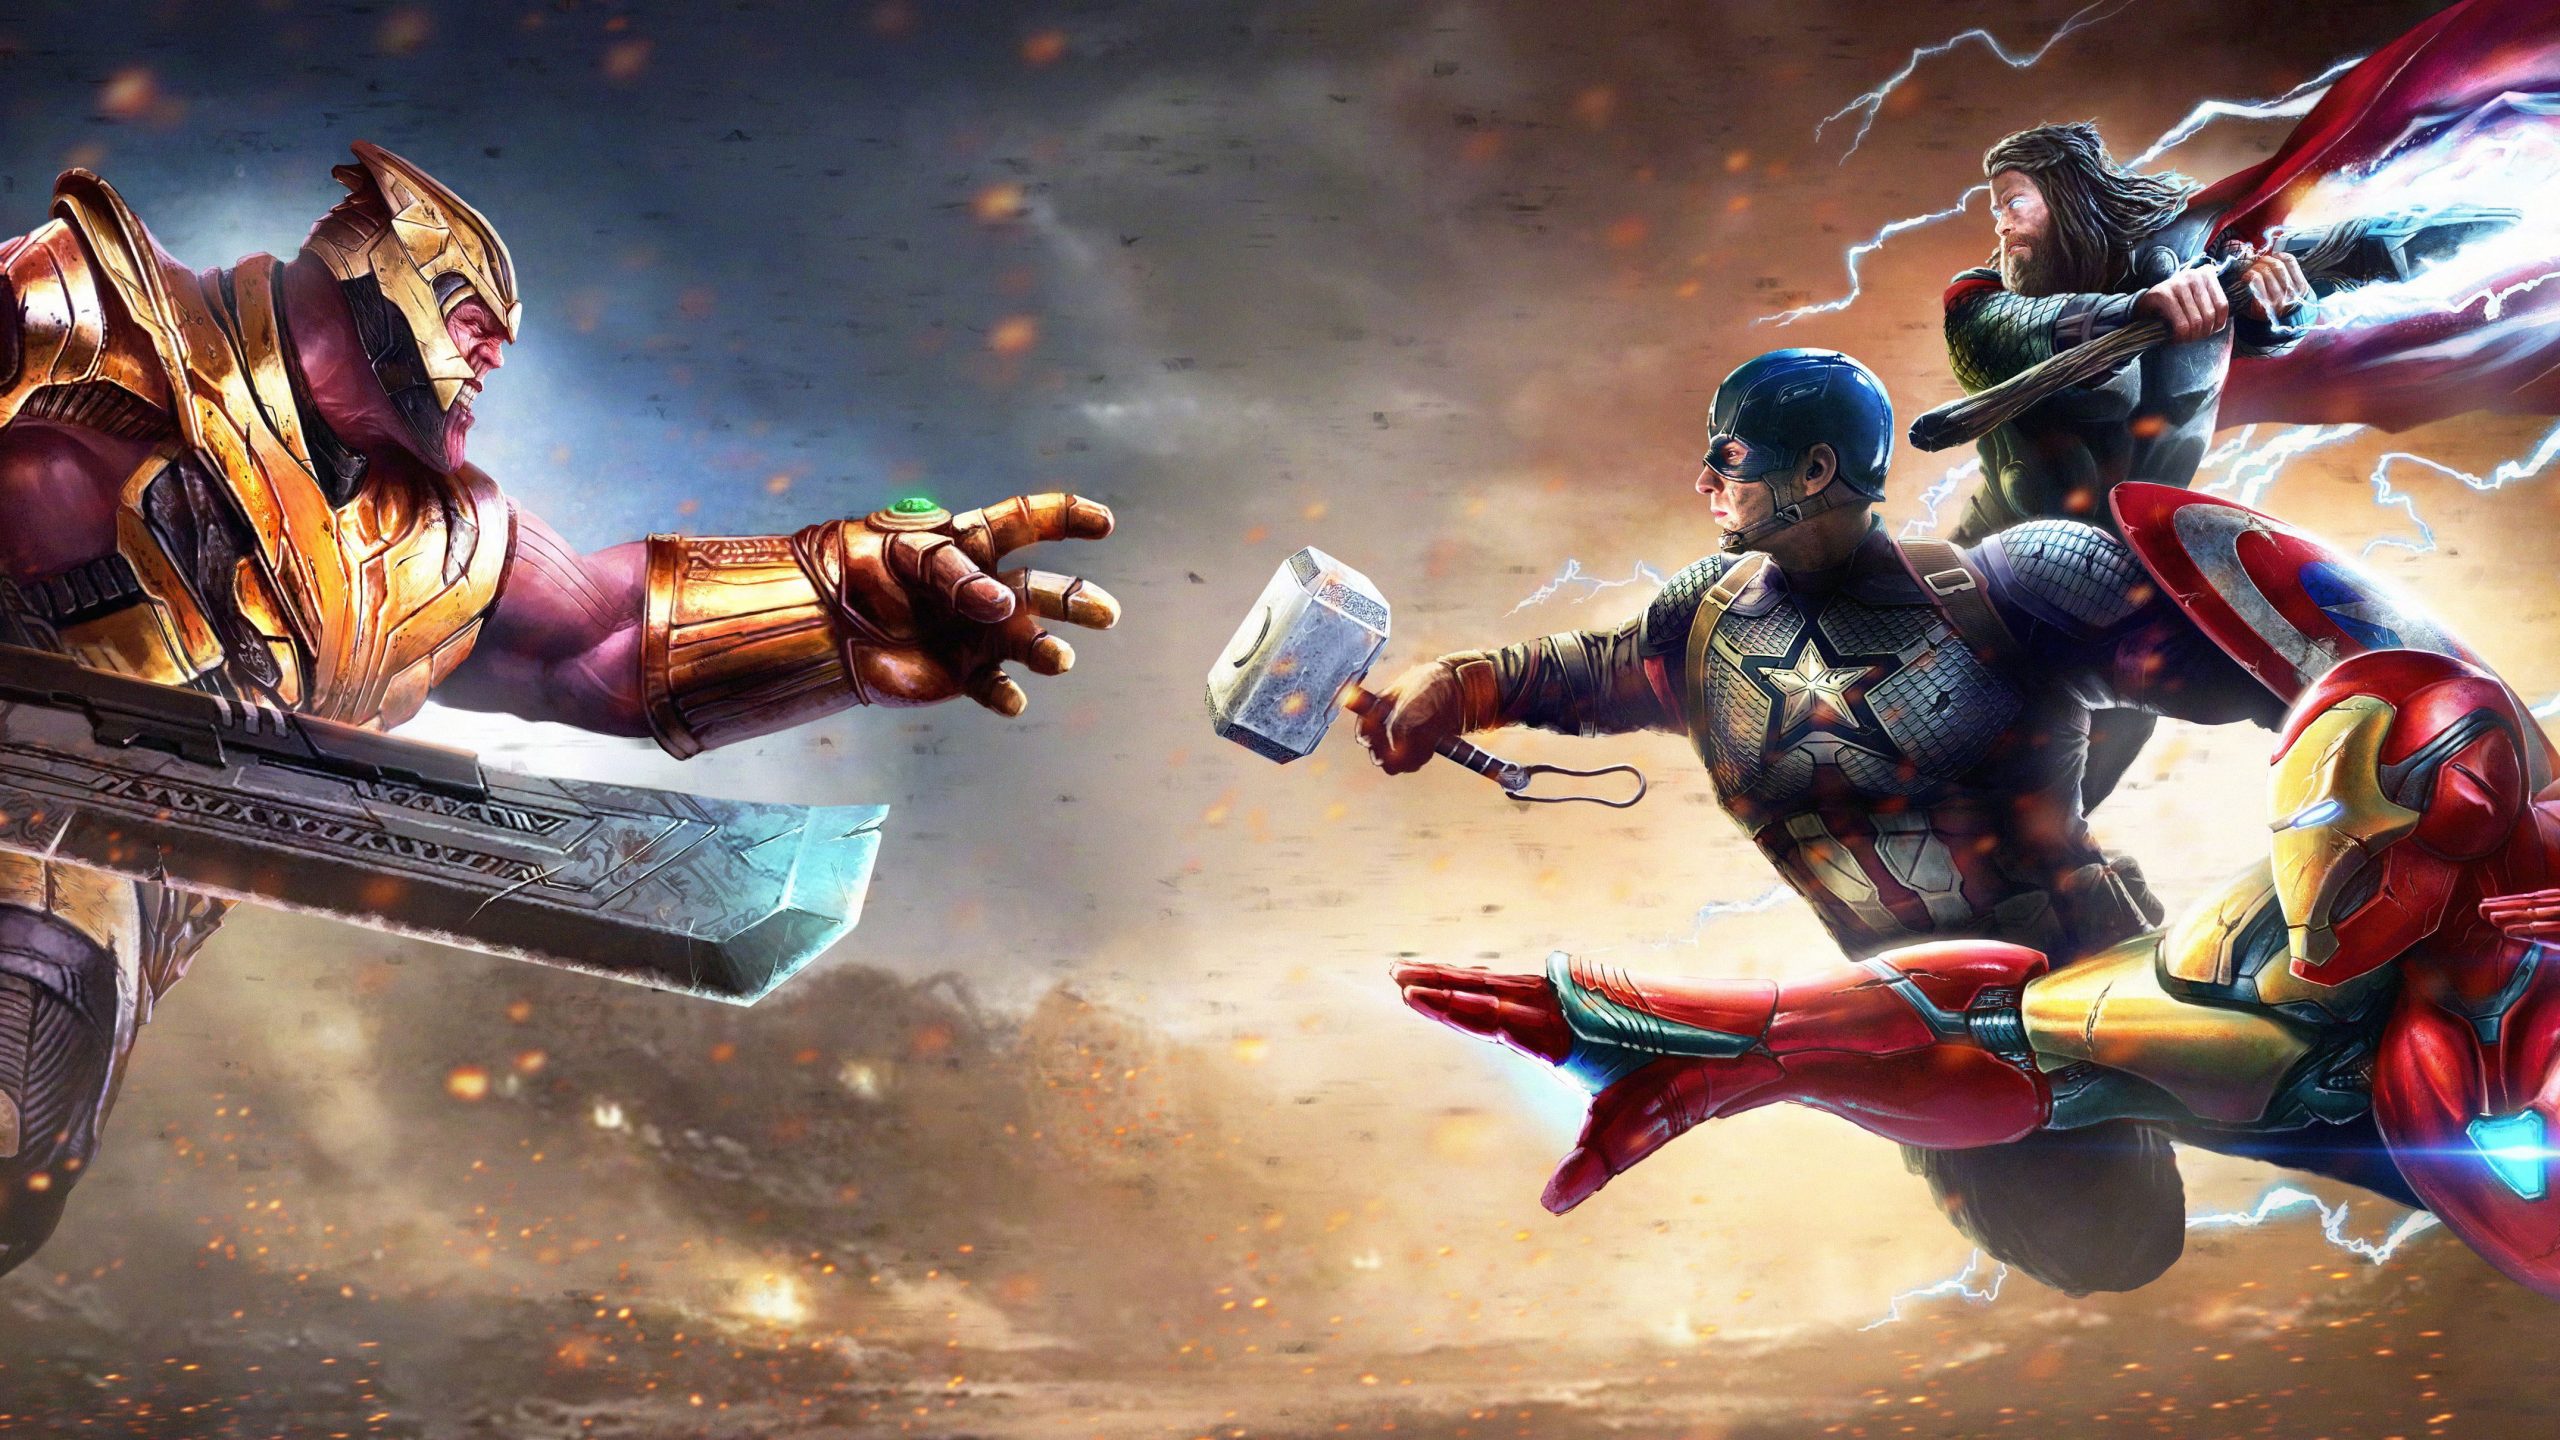 Wallpaper The Avengers, Avengers Endgame, Captain America